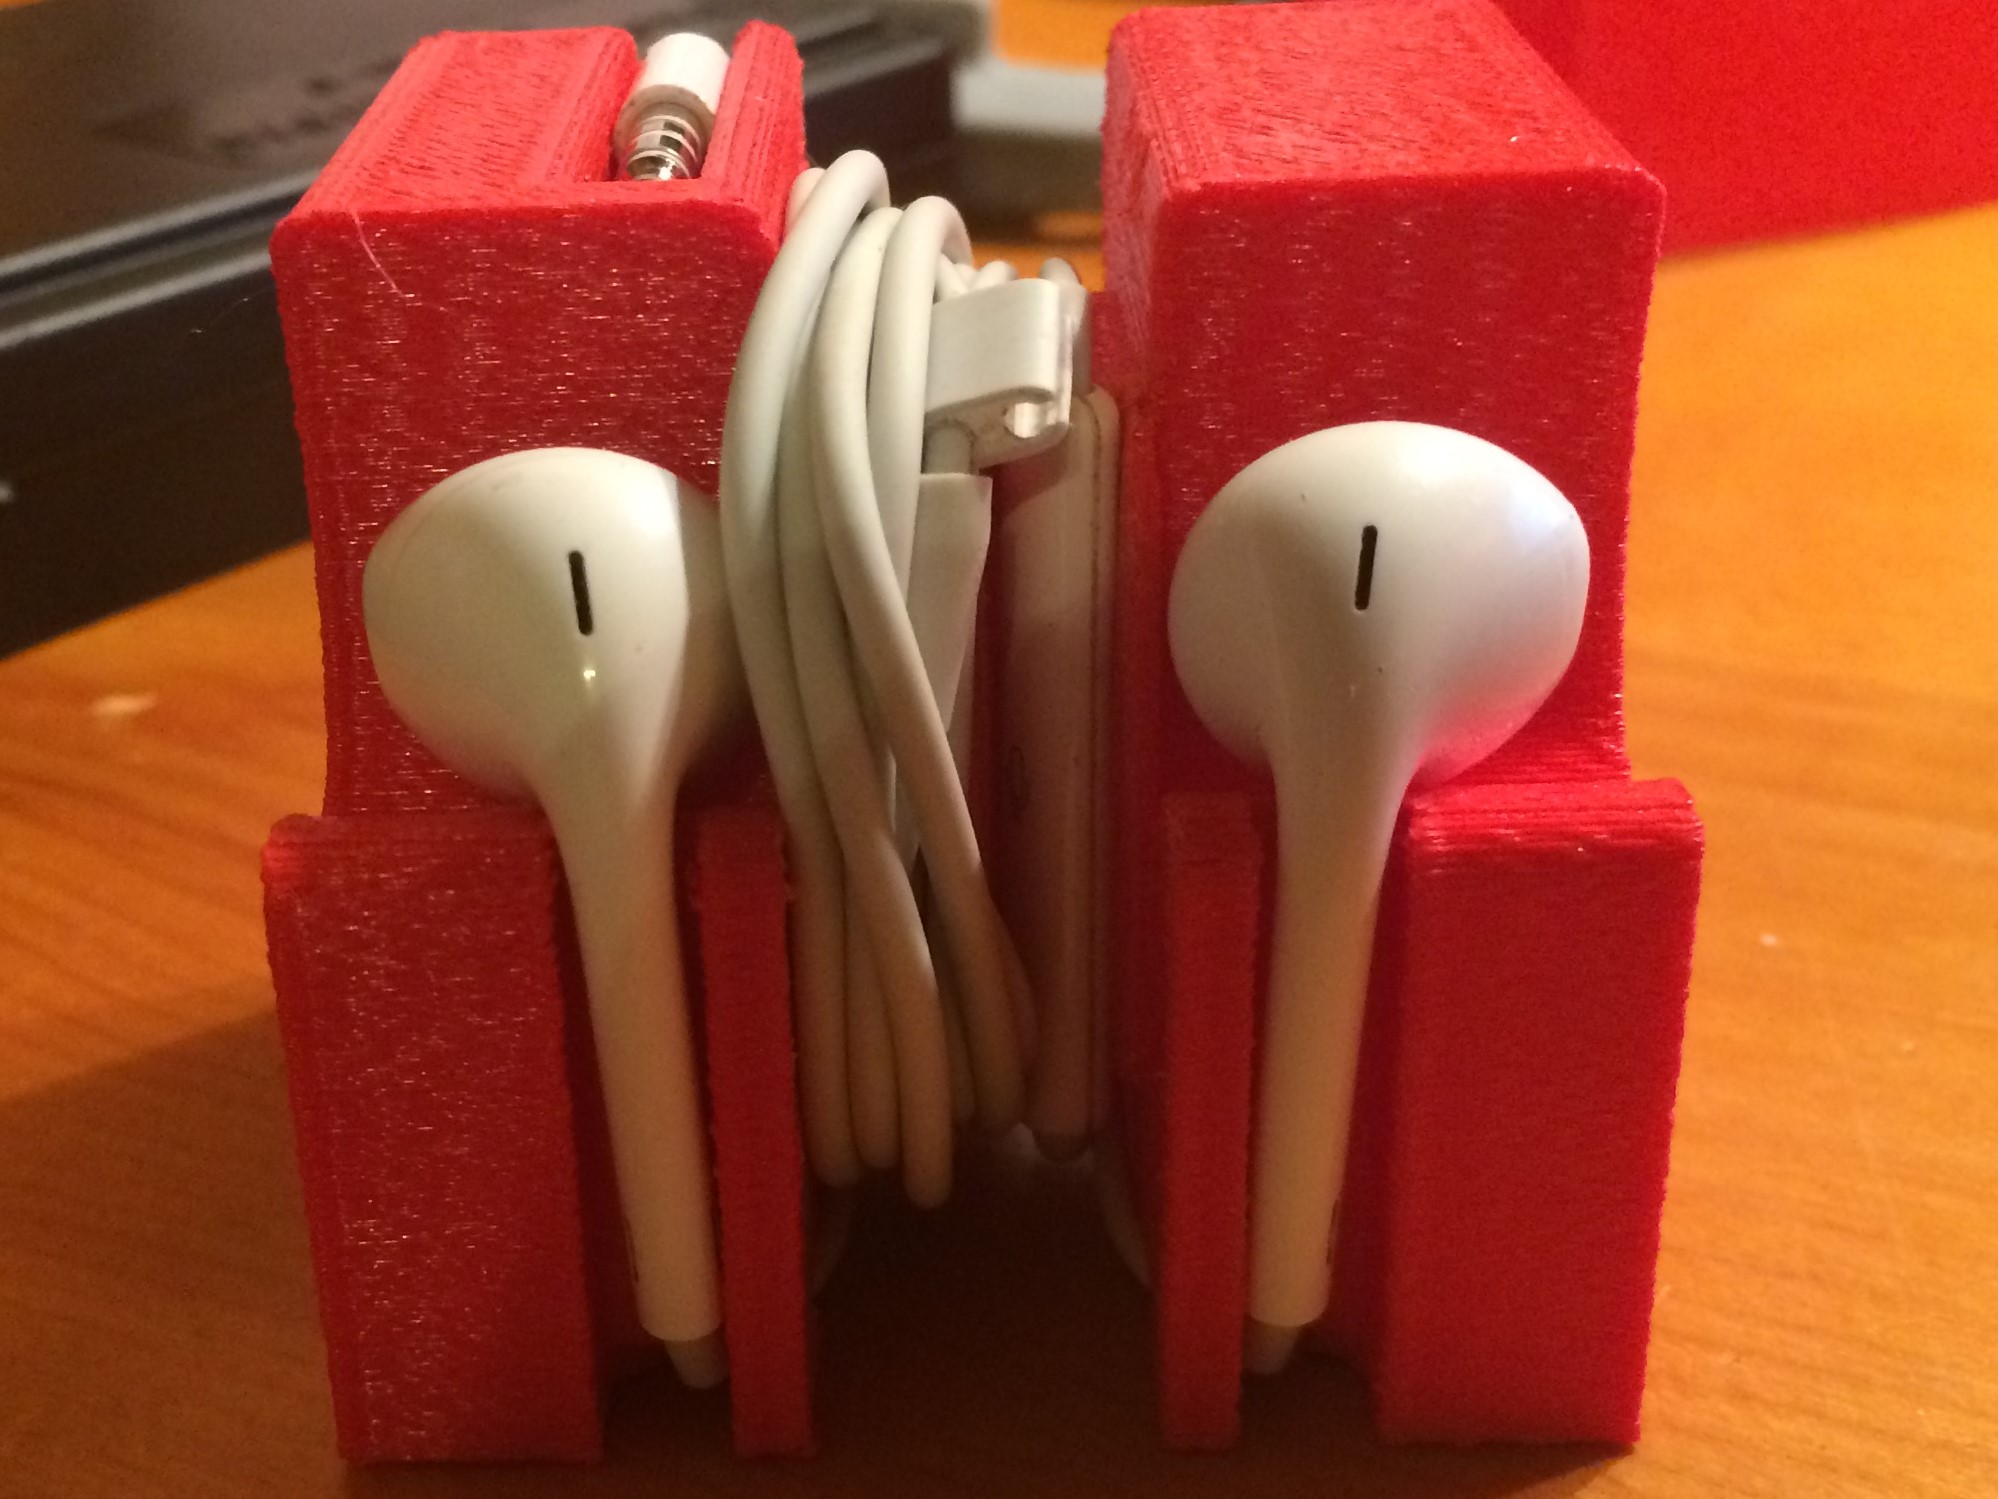 Apple Earbud Holder/Display